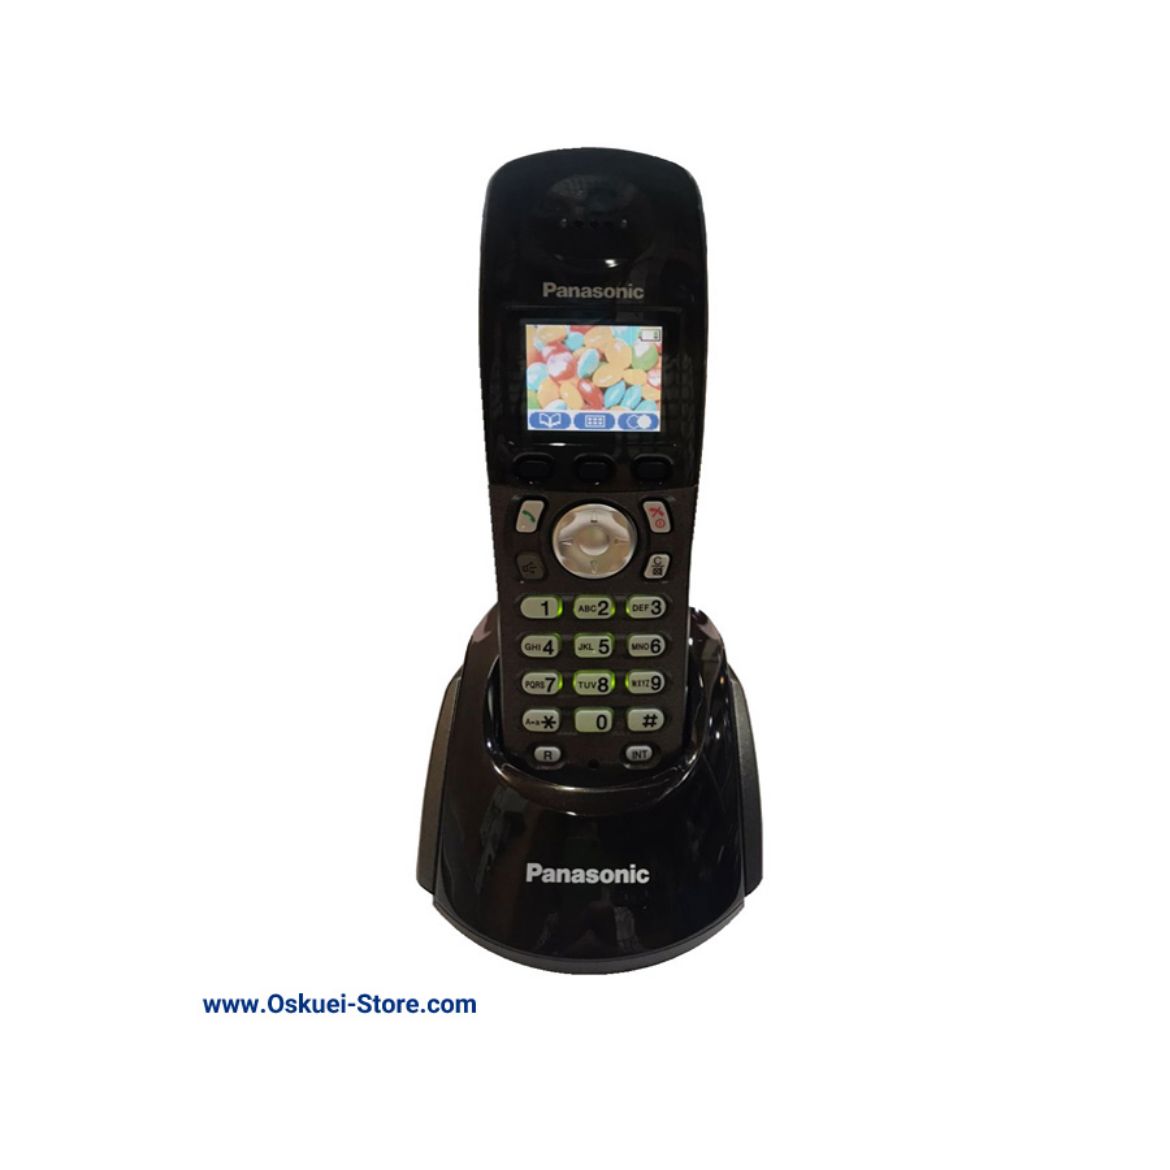 Panasonic KX-TGA130 Cordless Telephone Black